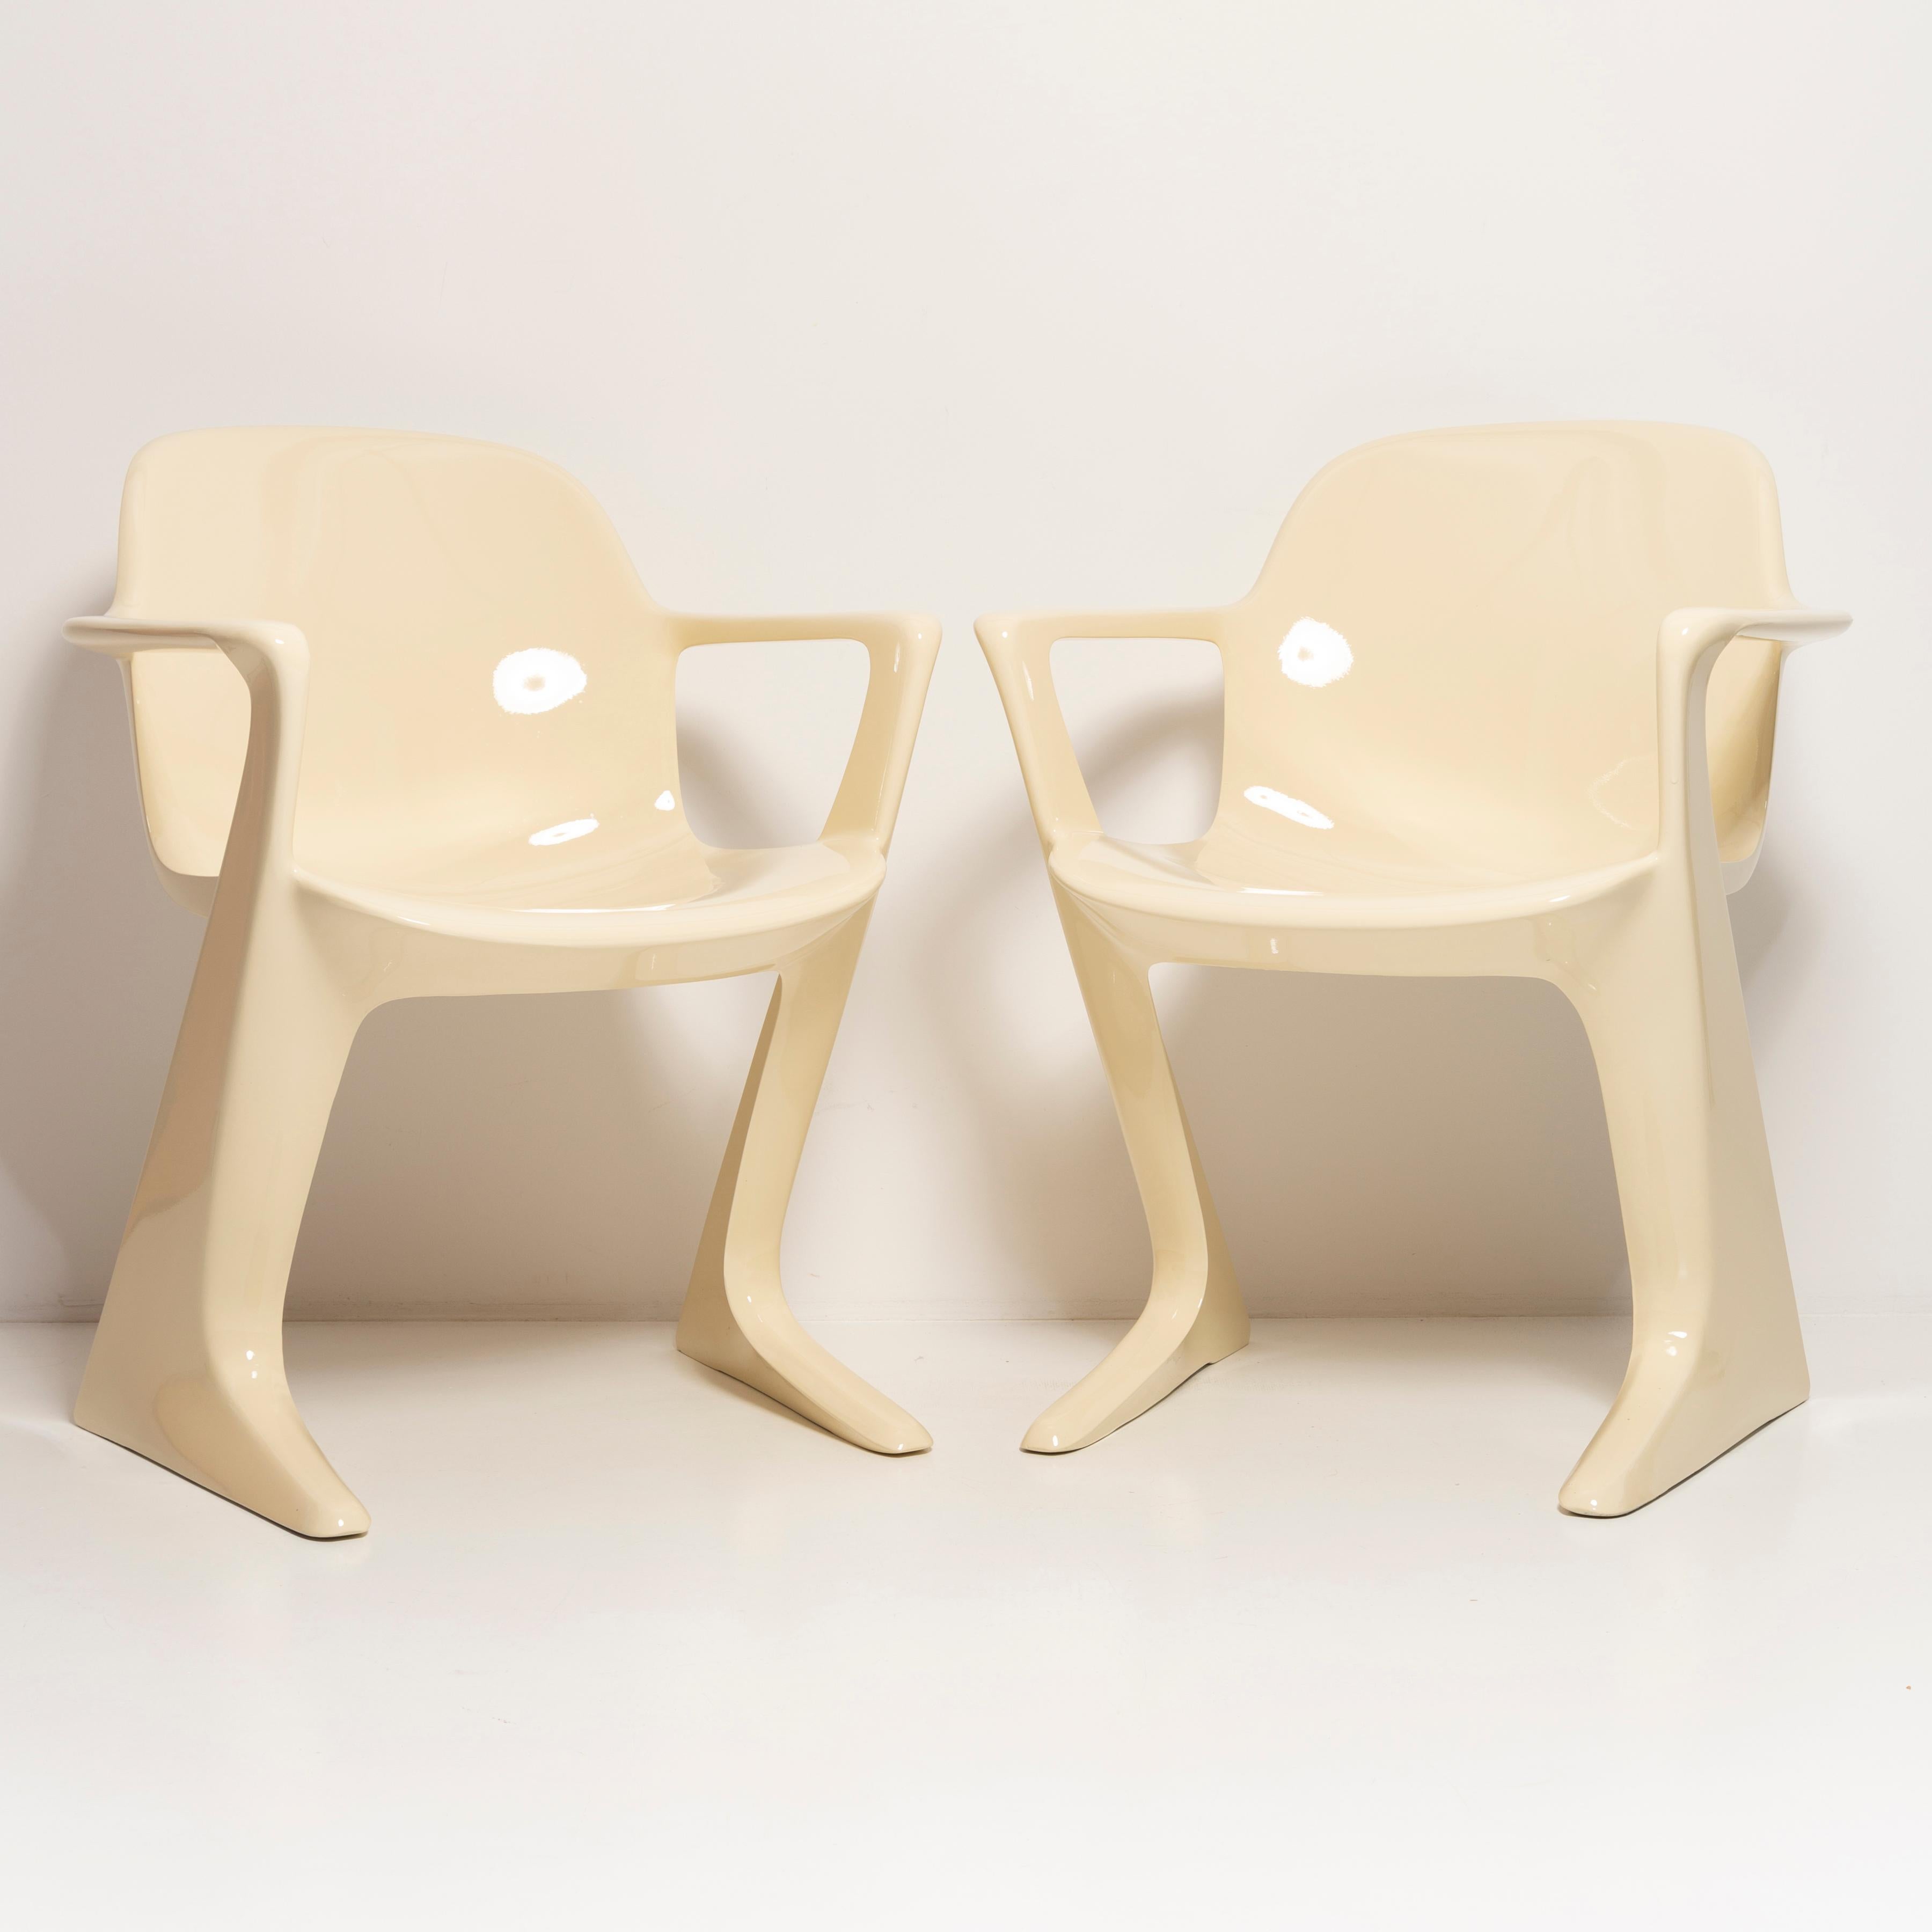 Ce modèle est appelé Z-chair. Conçue en 1968 en RDA par Ernst Moeckl et Siegfried Mehl, version allemande de la chaise Panton. Également appelée chaise kangourou ou chaise variopur. Produit dans l'est de l'Allemagne.

La z.stuhl, conçue par Ernst